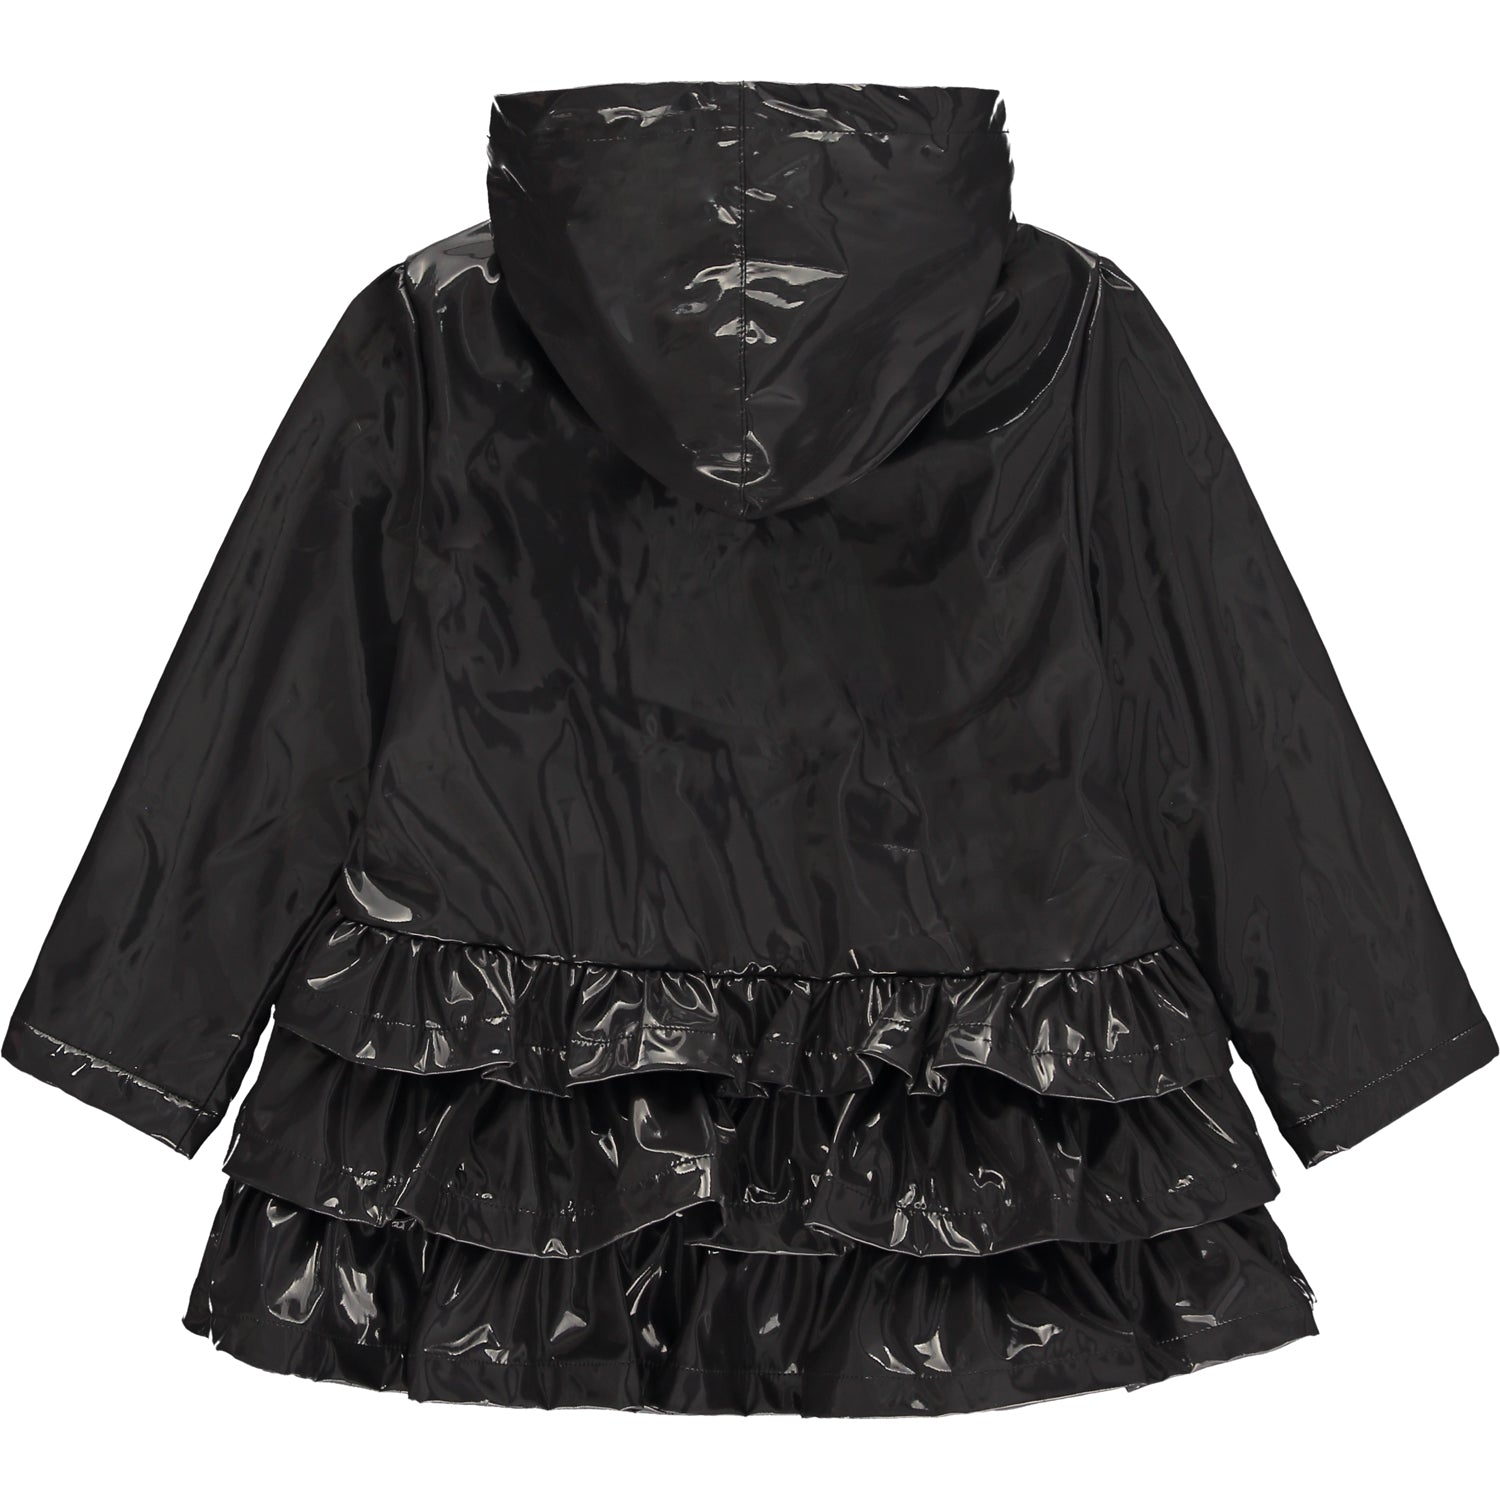 Black Hooded Raincoat